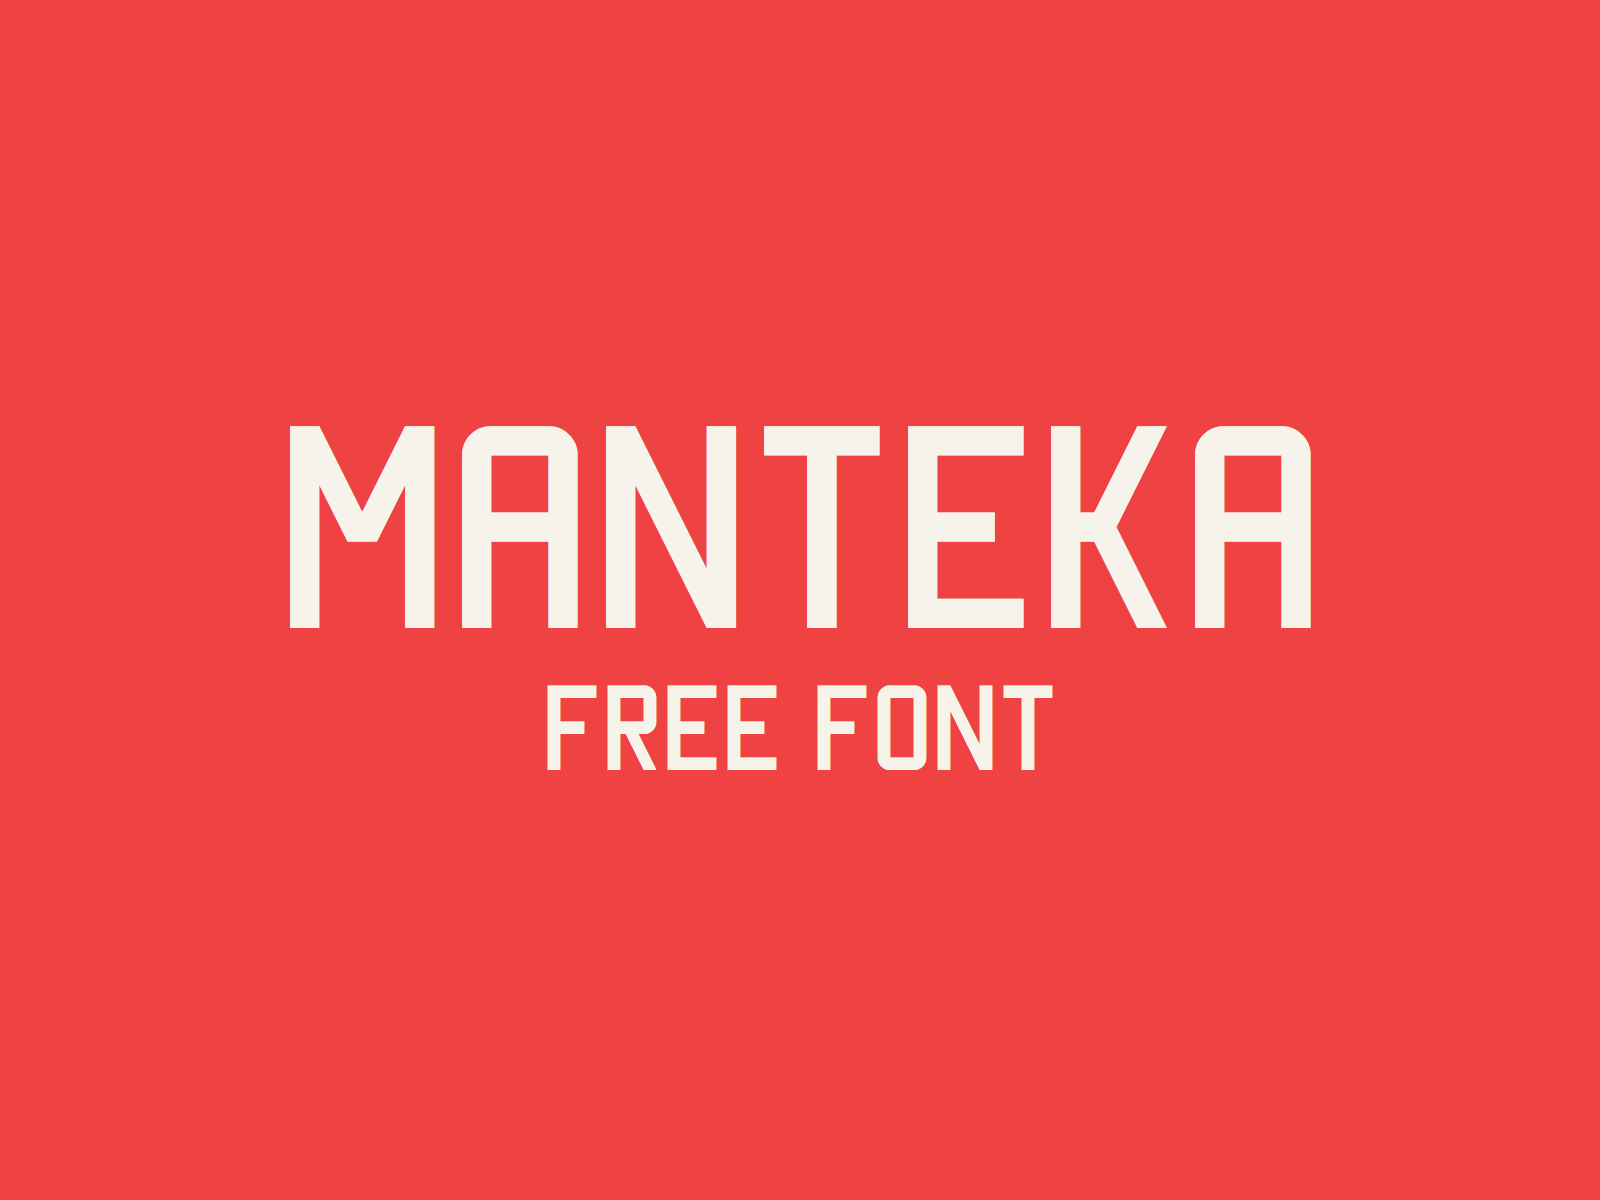 Manteka free font